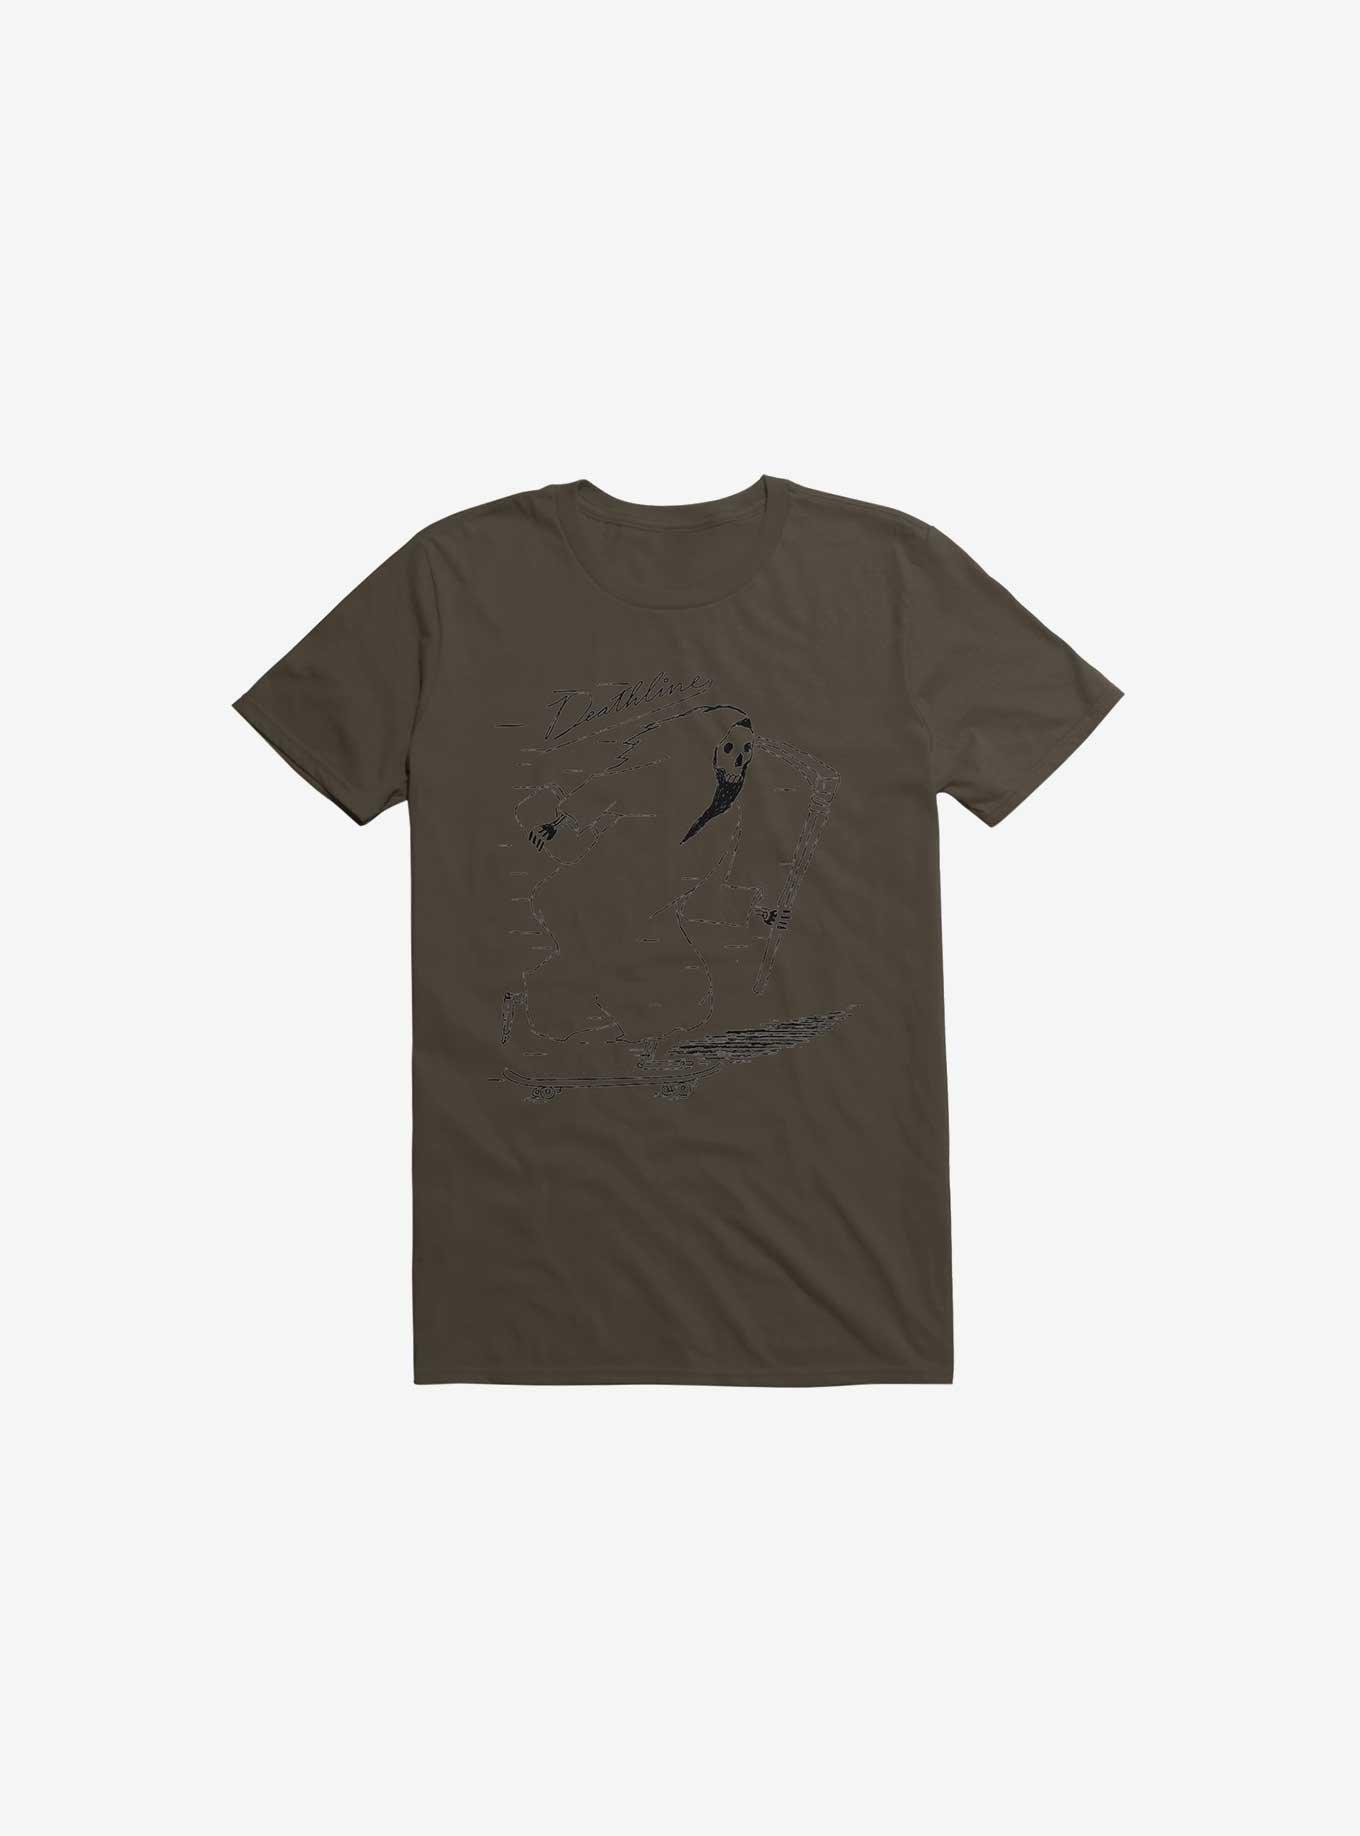 Deathline Reaper Brown T-Shirt, BROWN, hi-res